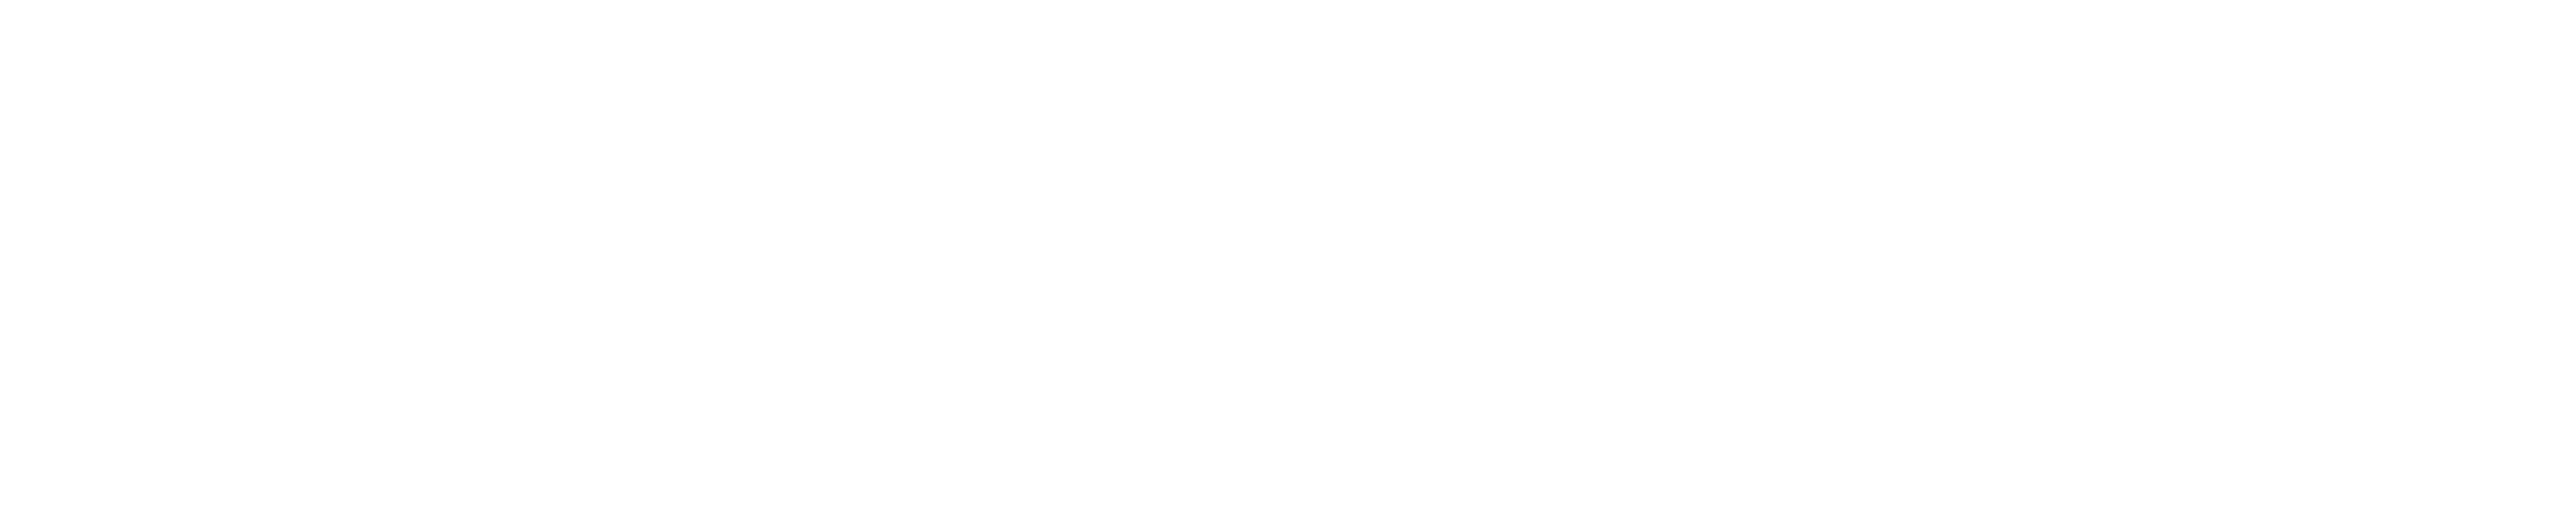 IEC-BC BC Job Connect